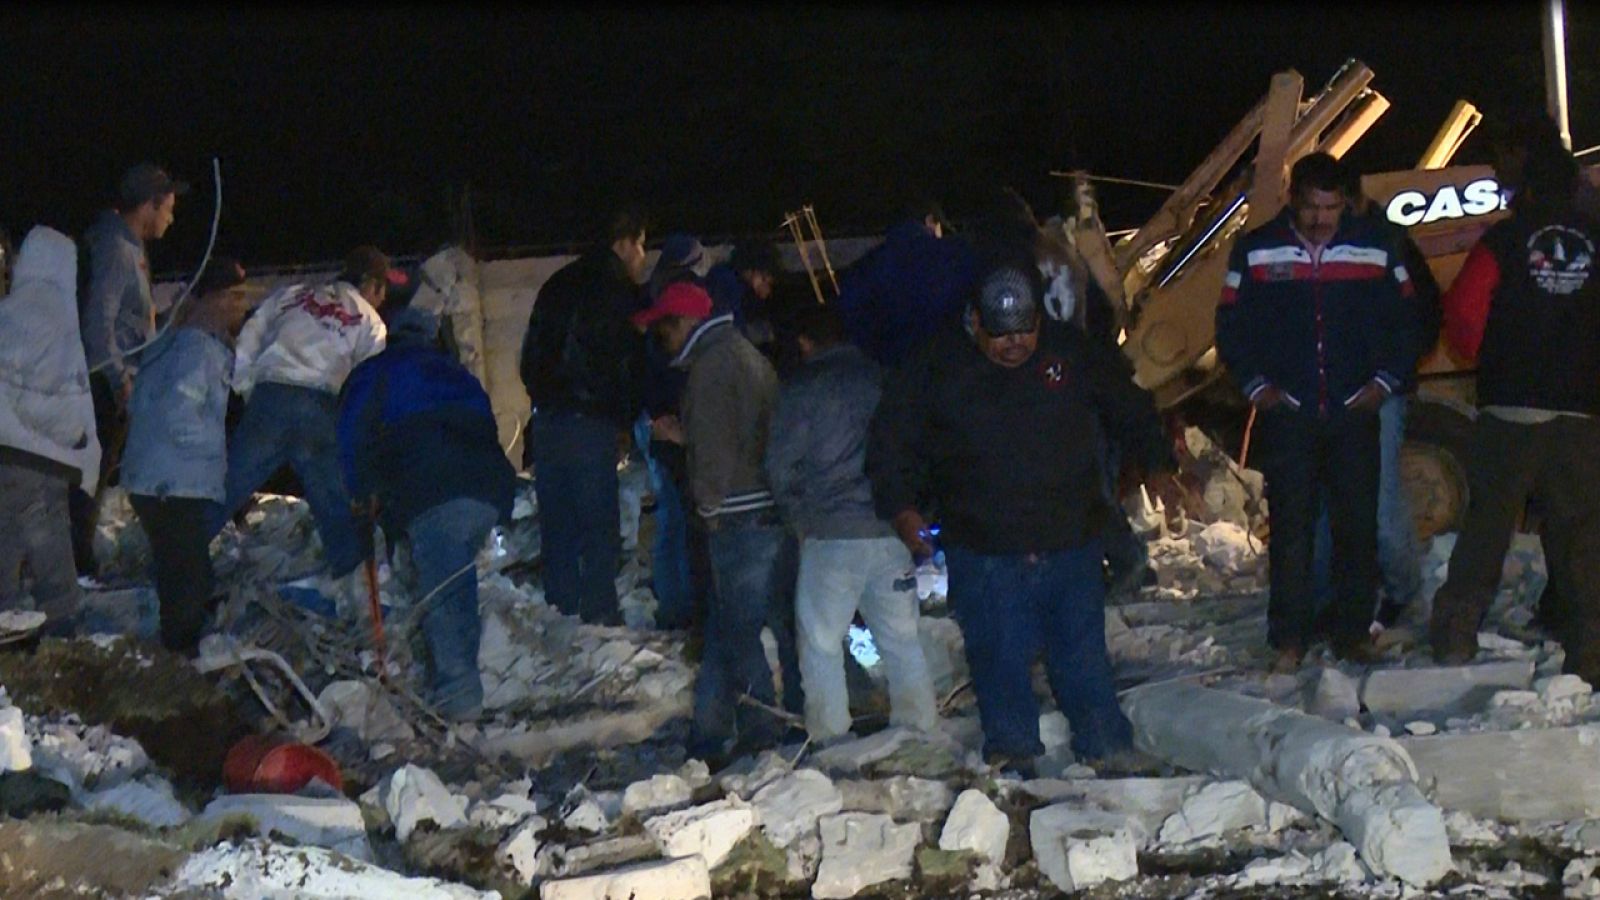 Daños ocasionados por una explosión en un almacen de pirotecnia en el estado de Puebla en Mexico